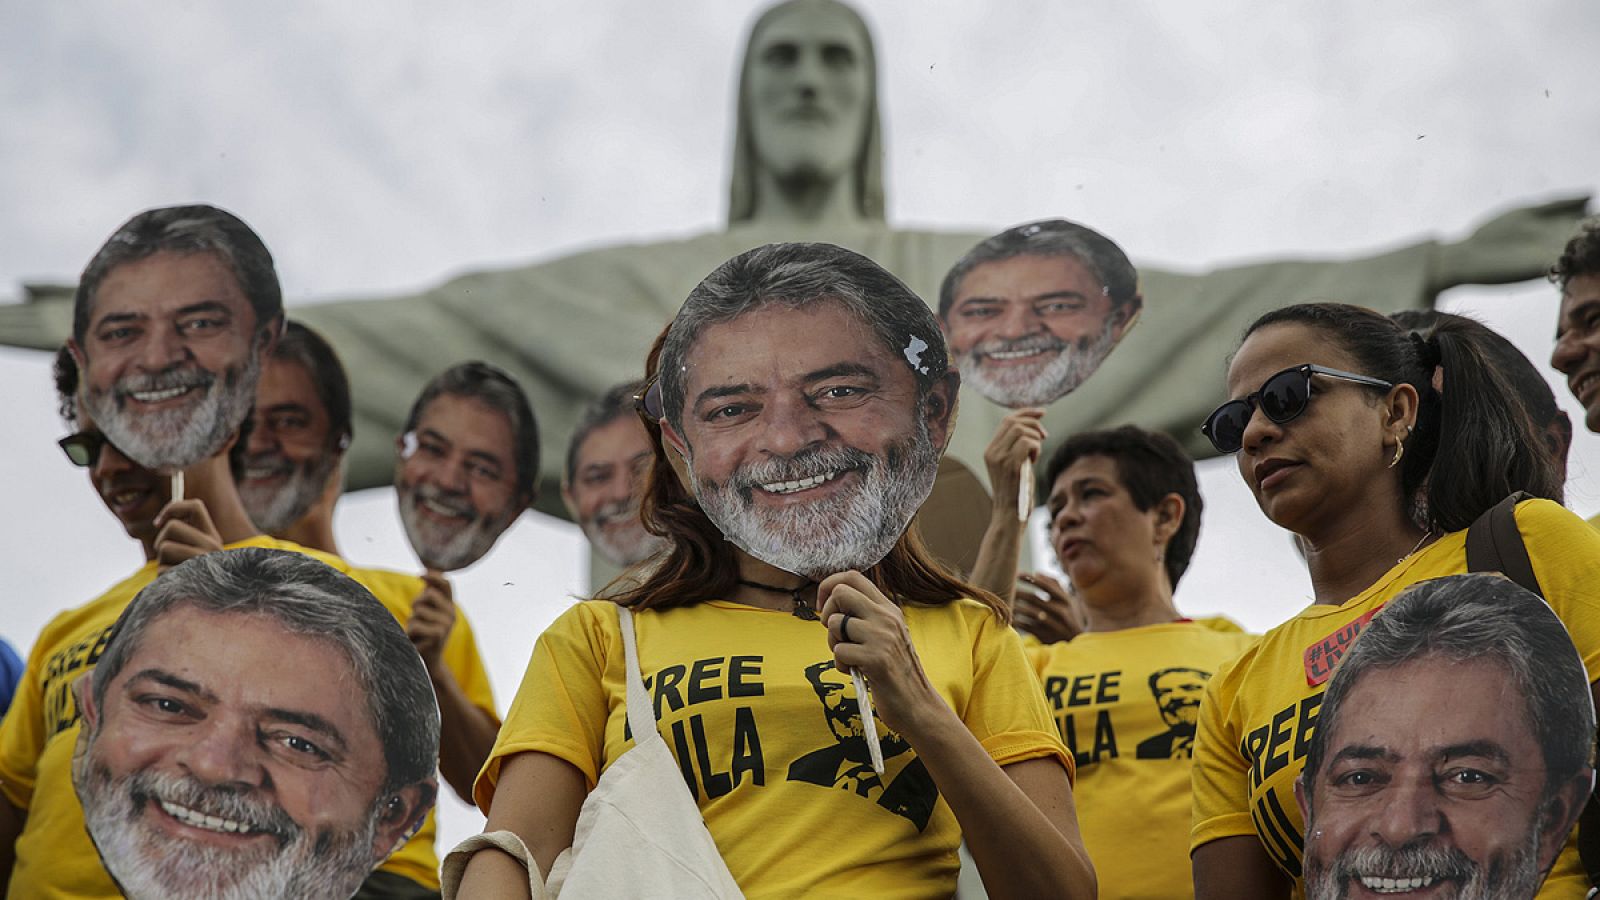 Seguidores de Luiz Inácio Lula da Silva usan máscaras del expresidente brasilñeo en un acto donde piden su libertad